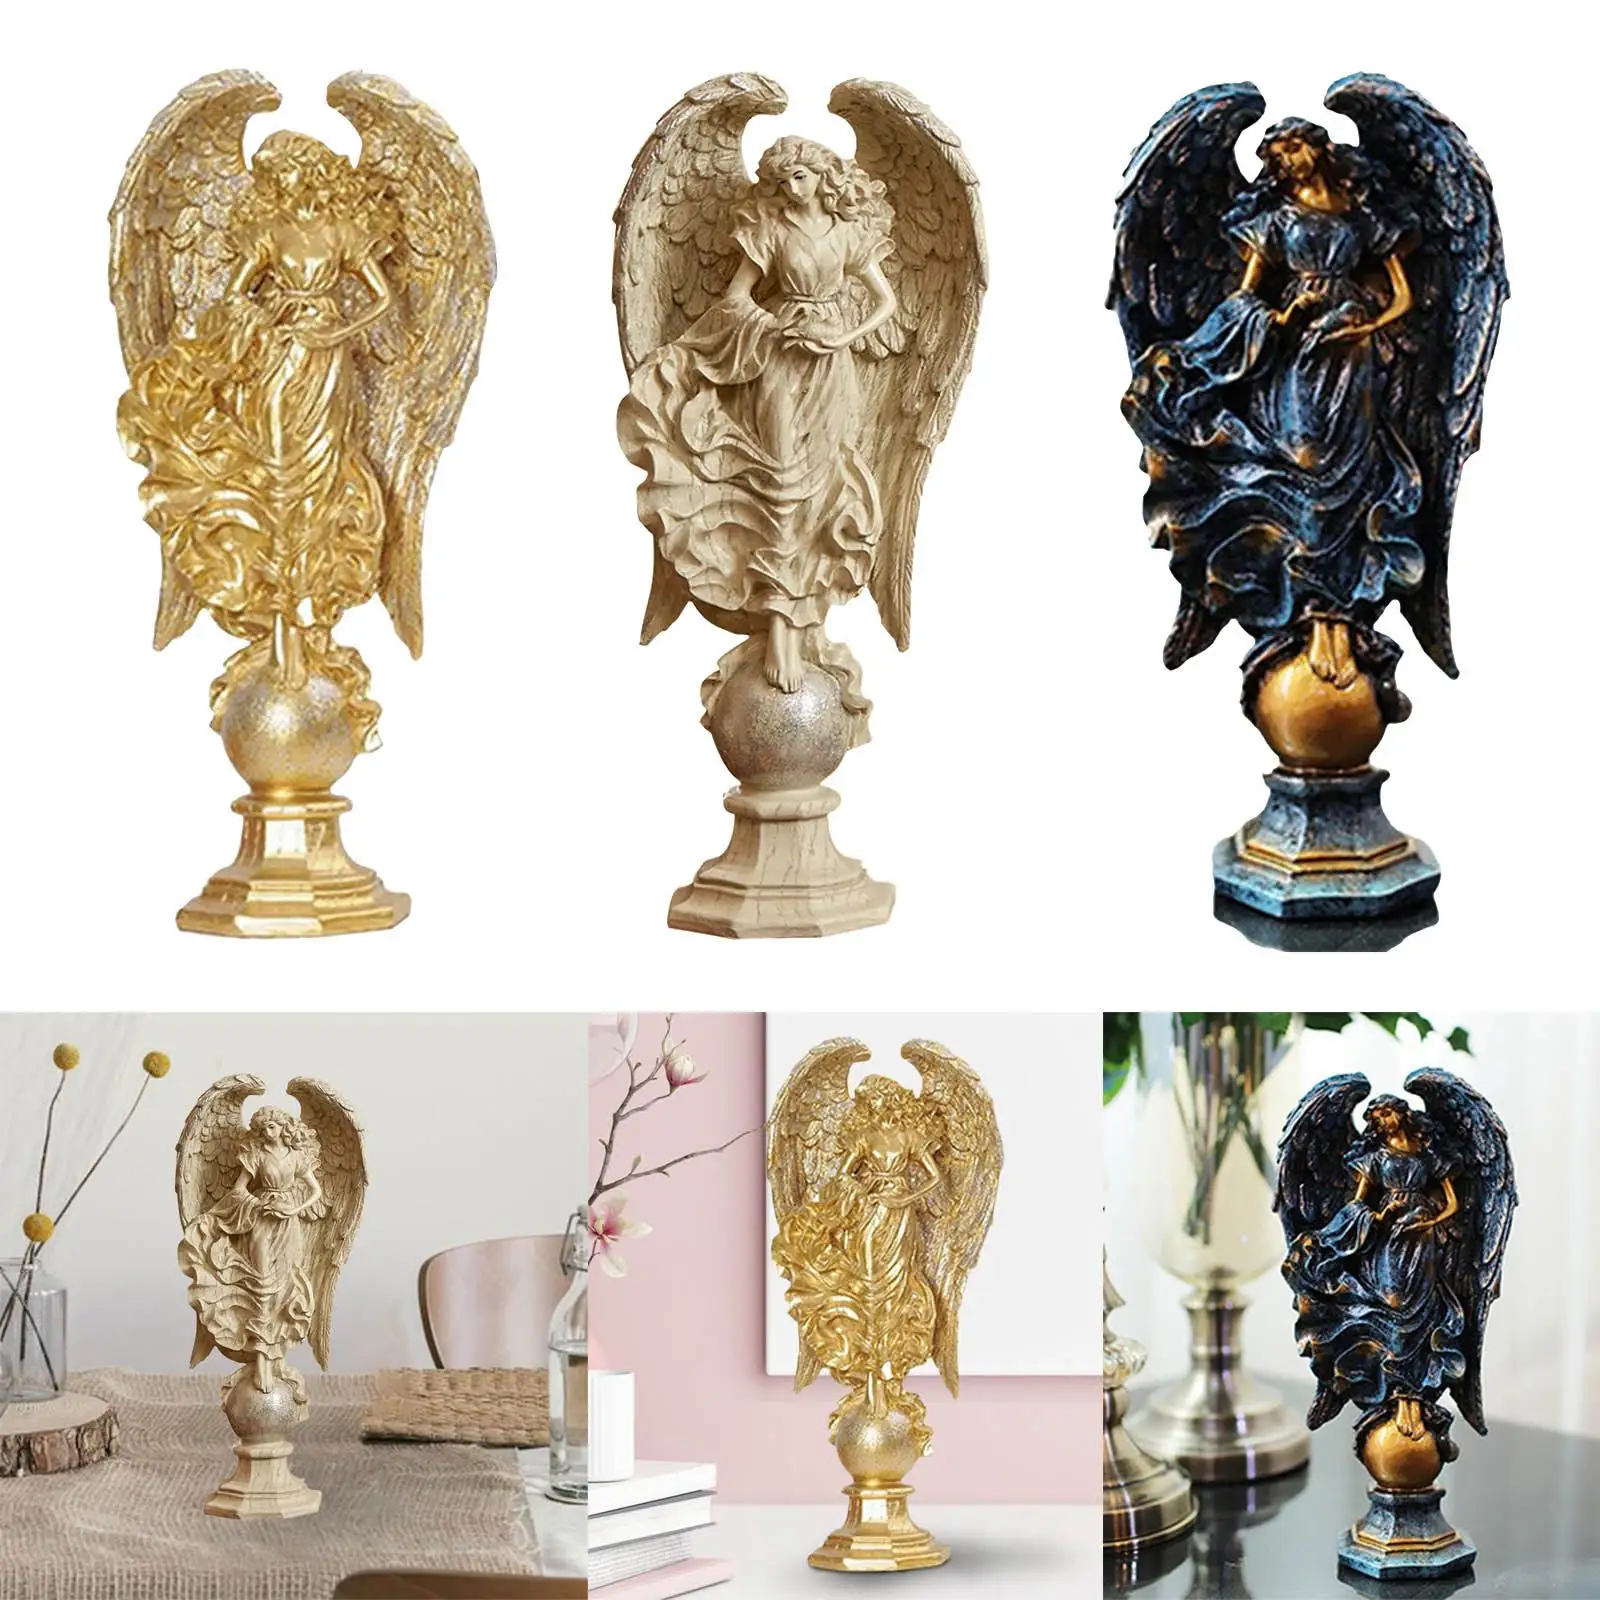 Angel Figurine Sculpture Art Crafts Desktop Garden Decoration Artwork Gift